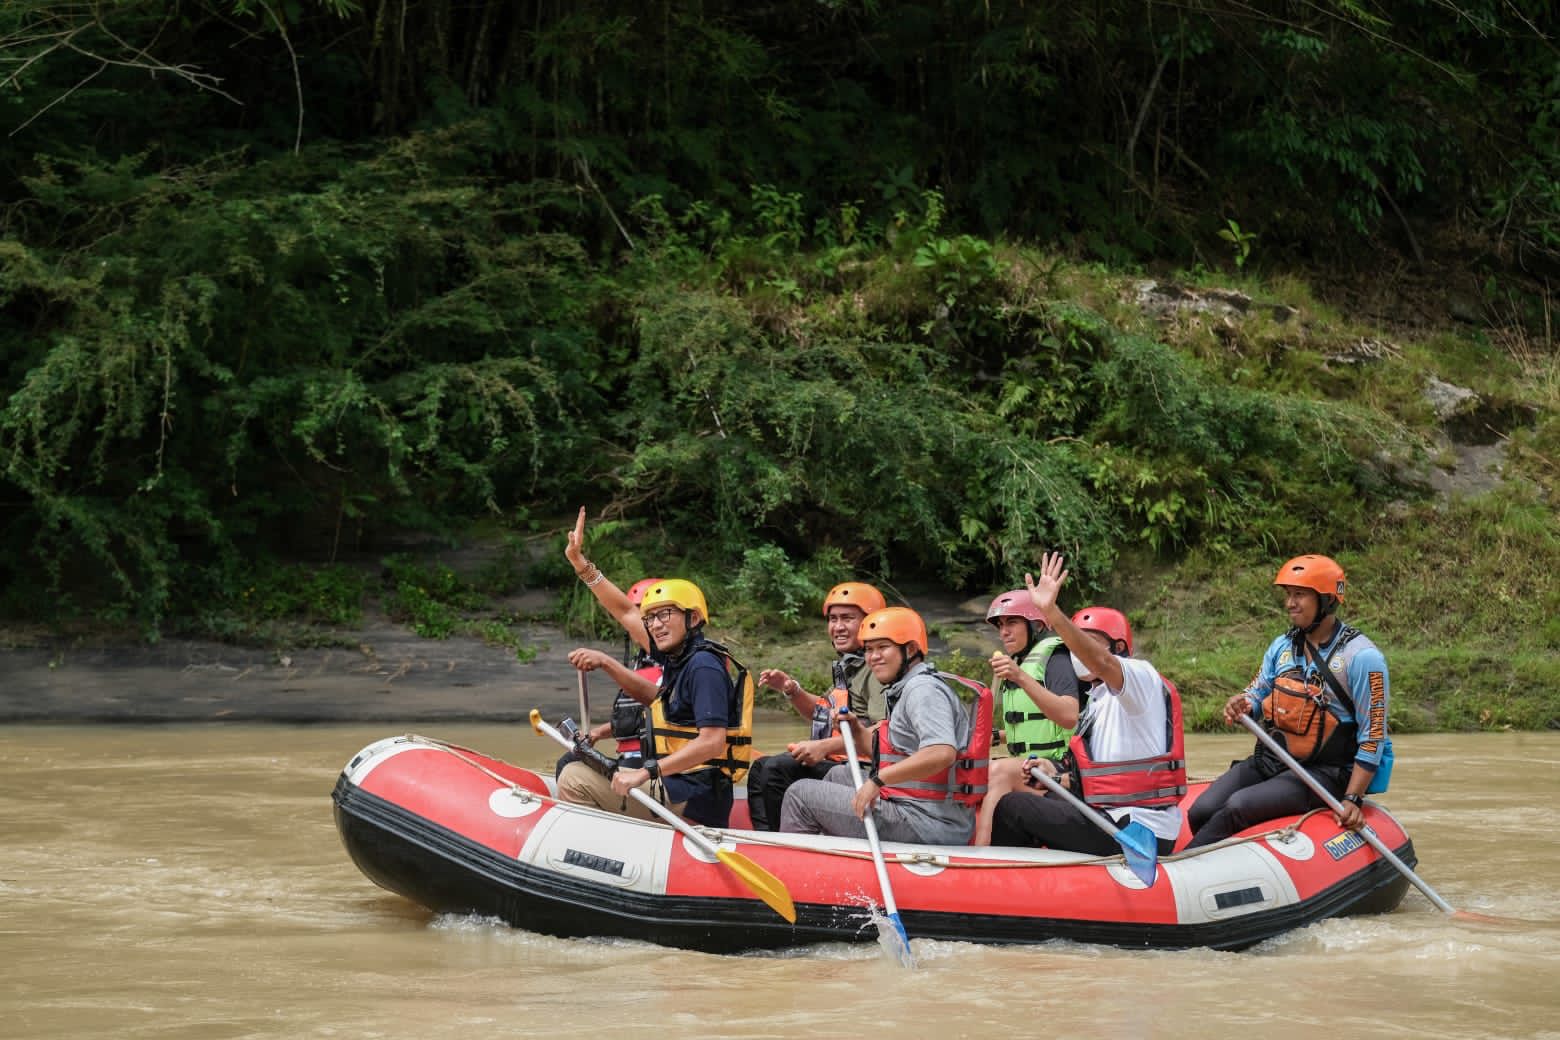 Termasuk 50 Desa Wisata Terbaik di ADWI 2022, Menparekraf Jajal Wisata Arung Jeram di Desa Wisata Buluh Duri Sumut